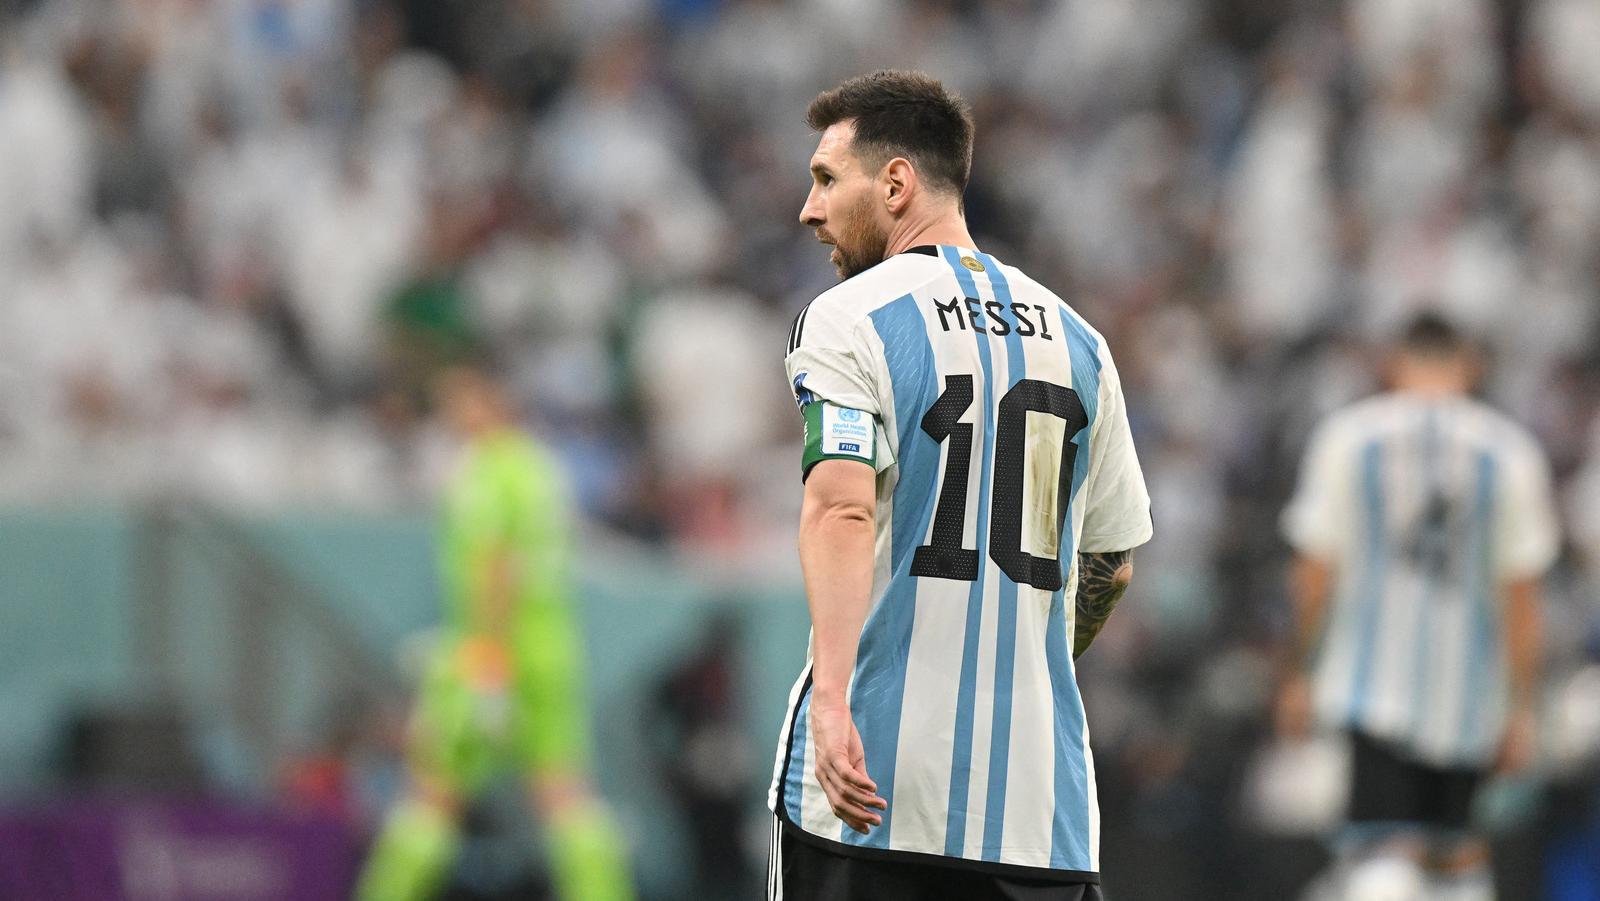 Quero continuar vivendo mais alguns jogos pela Seleção como campeão do mundo',  diz Messi - Copa do Mundo - Diário do Nordeste